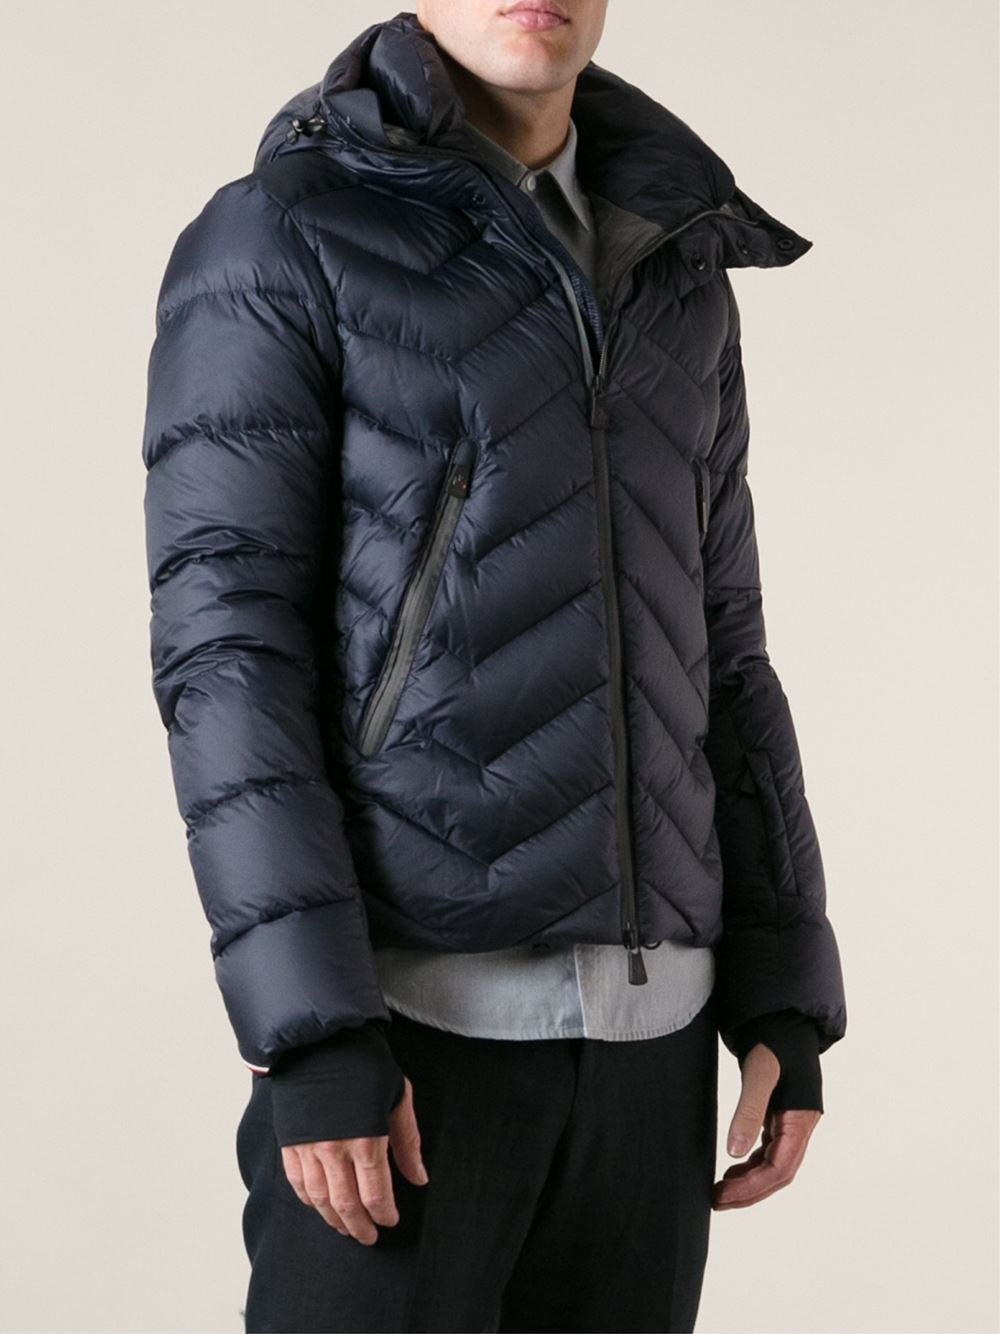 Lyst - Moncler Grenoble Hooded Padded Jacket in Blue for Men